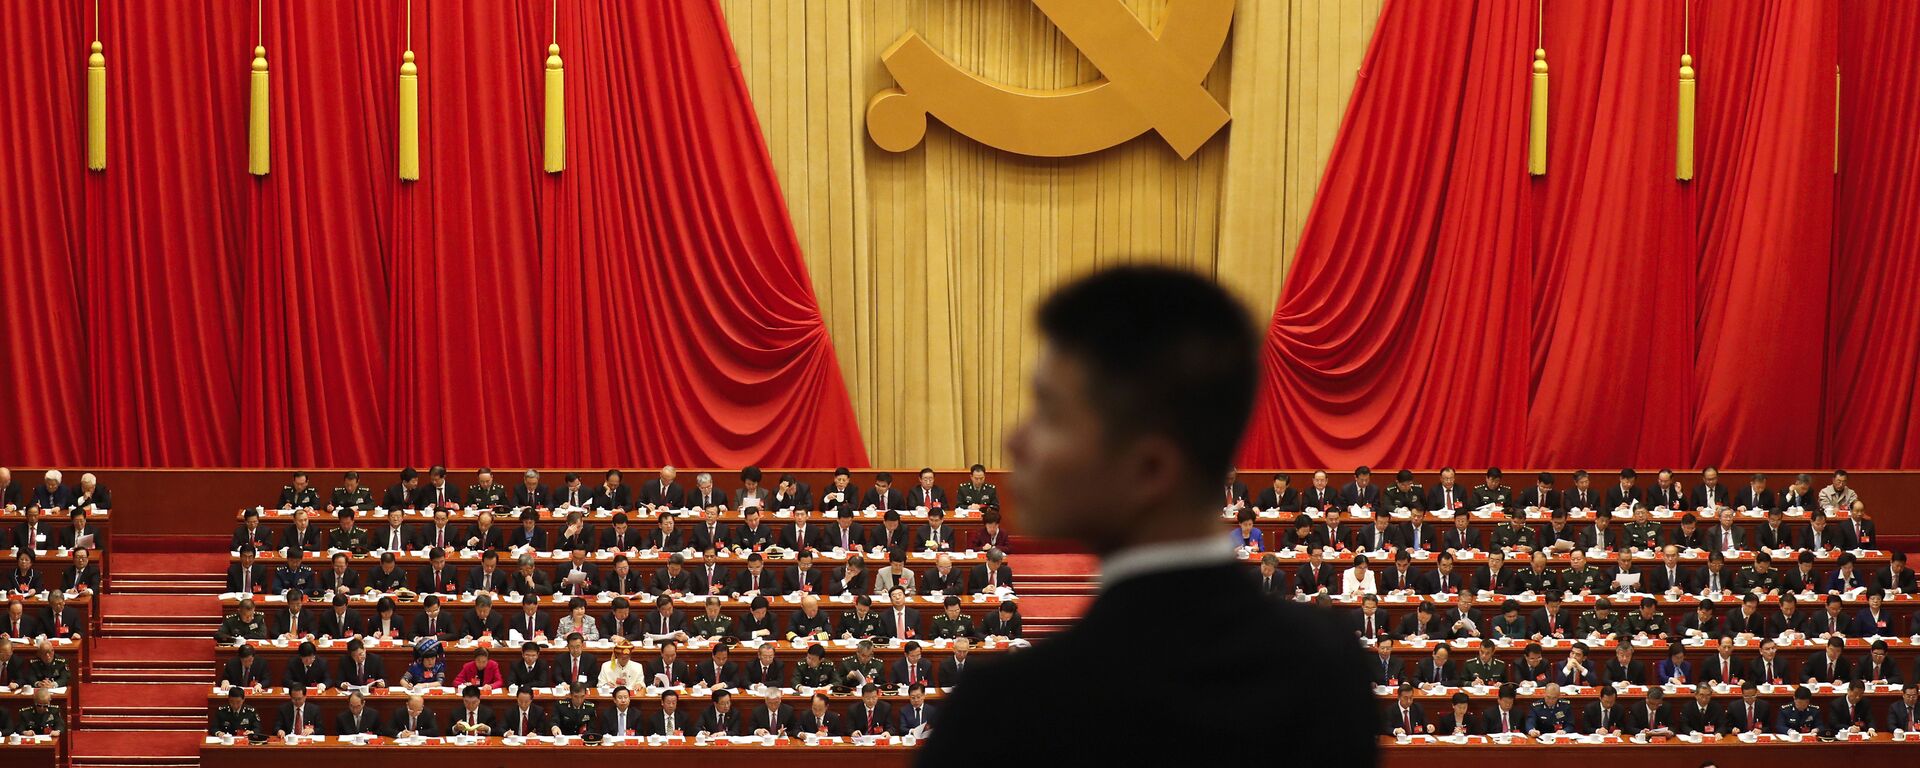 Војник стоји током говора кинеског председника Си Ђинпинга на церемонији отварања 19. конгреса Комунистичке партије у Пекингу - Sputnik Србија, 1920, 02.09.2022